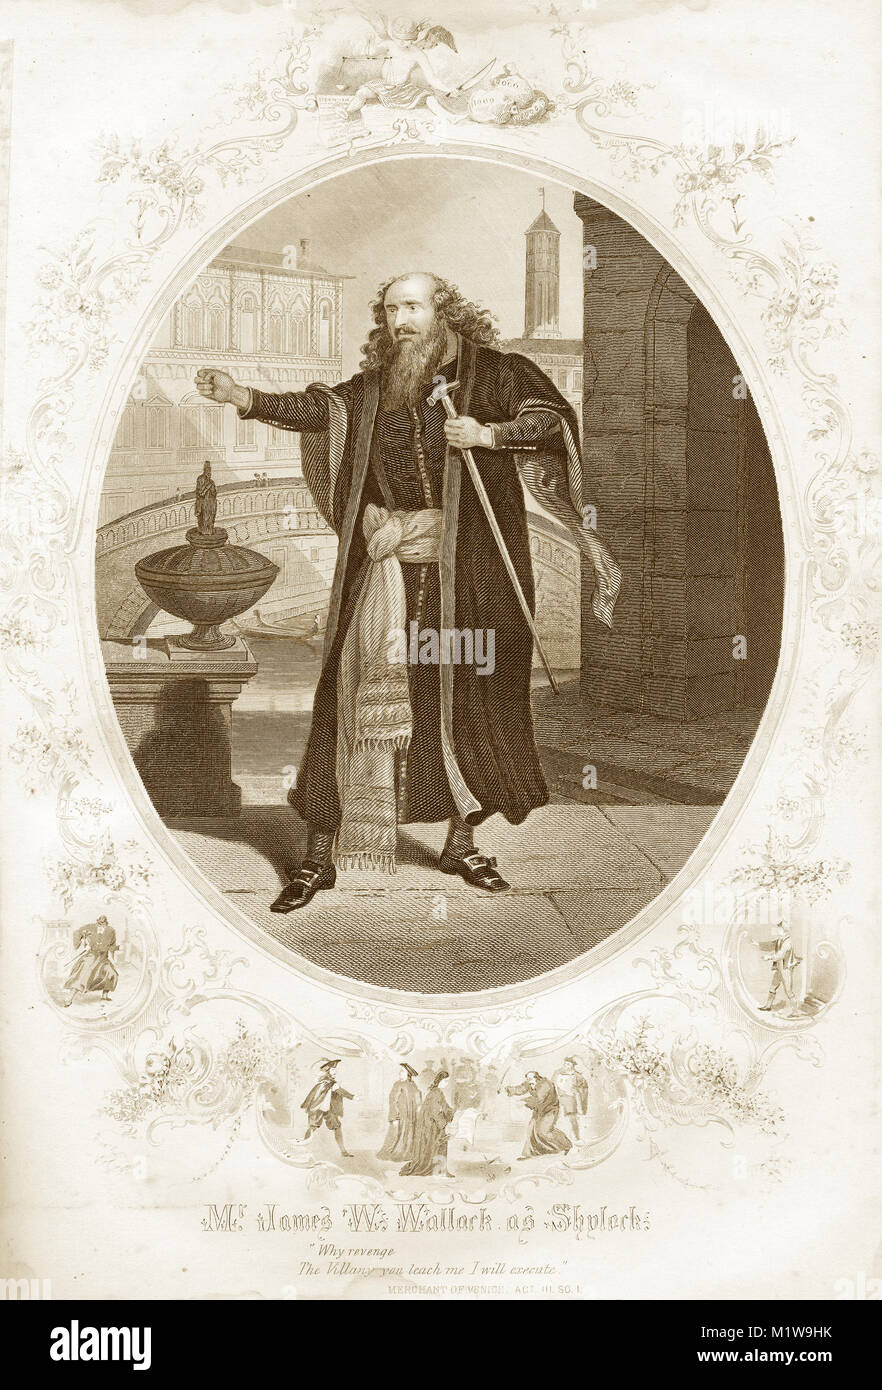 Grabado del personaje de Shakespeare Shylock, actuado por un americano, James W. Wallark en el Mercader de Venecia. Desde el Ilustrado obras completas de Shakespeare, 1878 Foto de stock